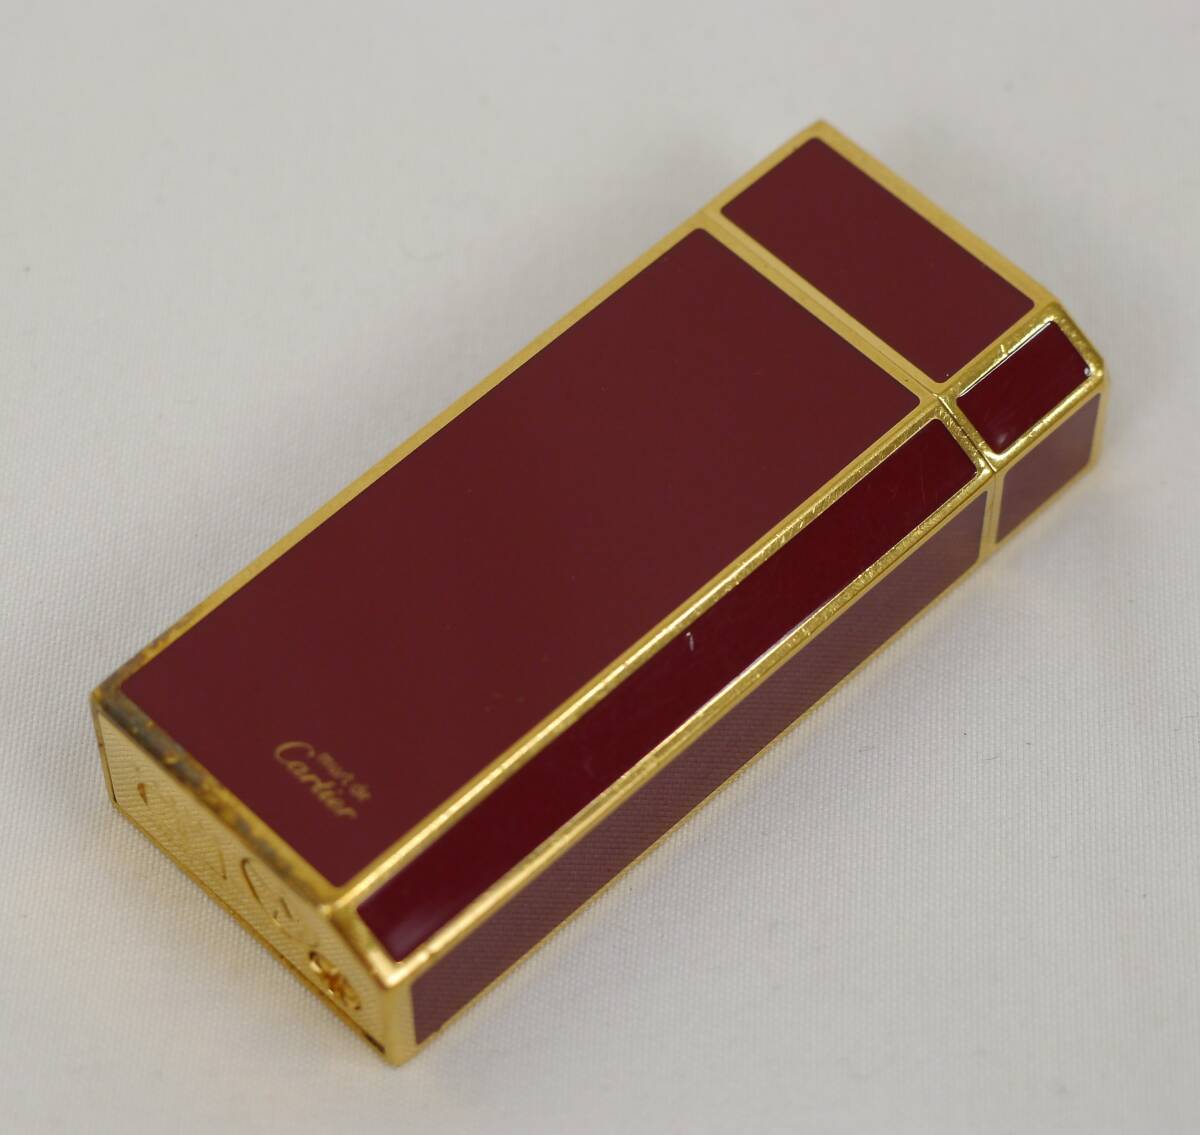 Cartier ガスライター カルティエ スイスメイド ブランド小物 喫煙グッズ プレゼントご褒美 QVQ-98の画像1